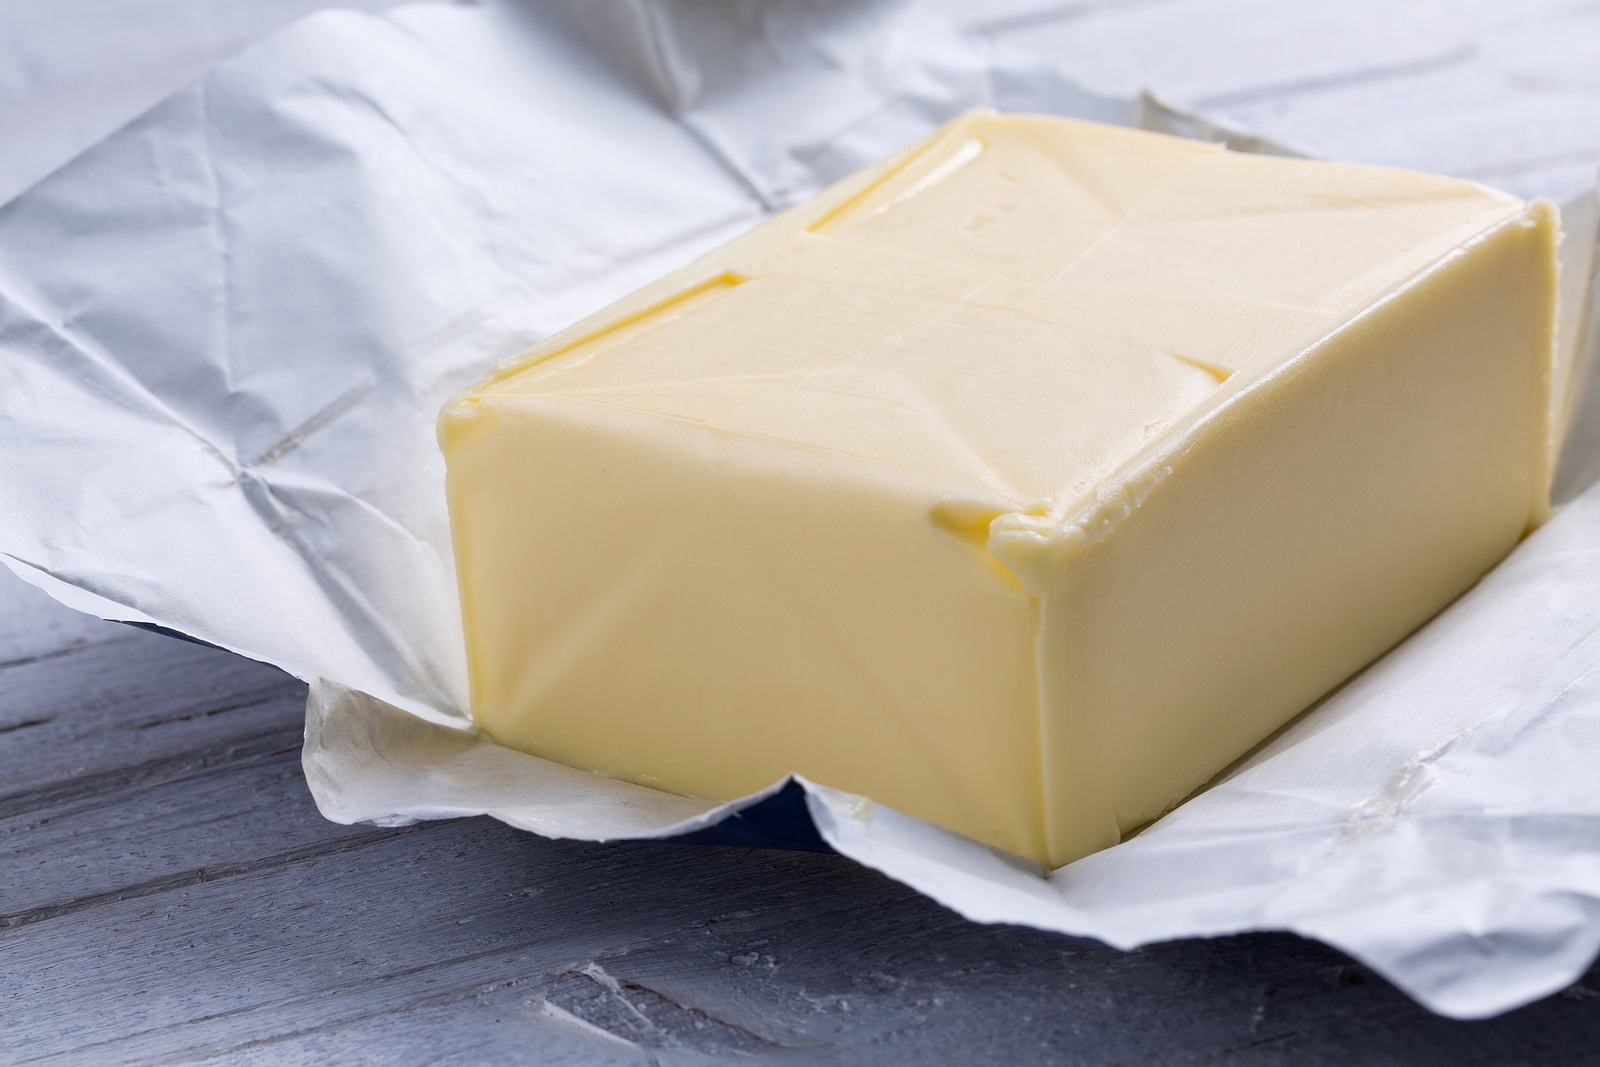 Наполеон молоко масло сливочное. Масло в открытой упаковке сливочное. Масло сливочное в упаковке открытое. Пачка масла открытая. Раскрытая пачка сливочного масла.